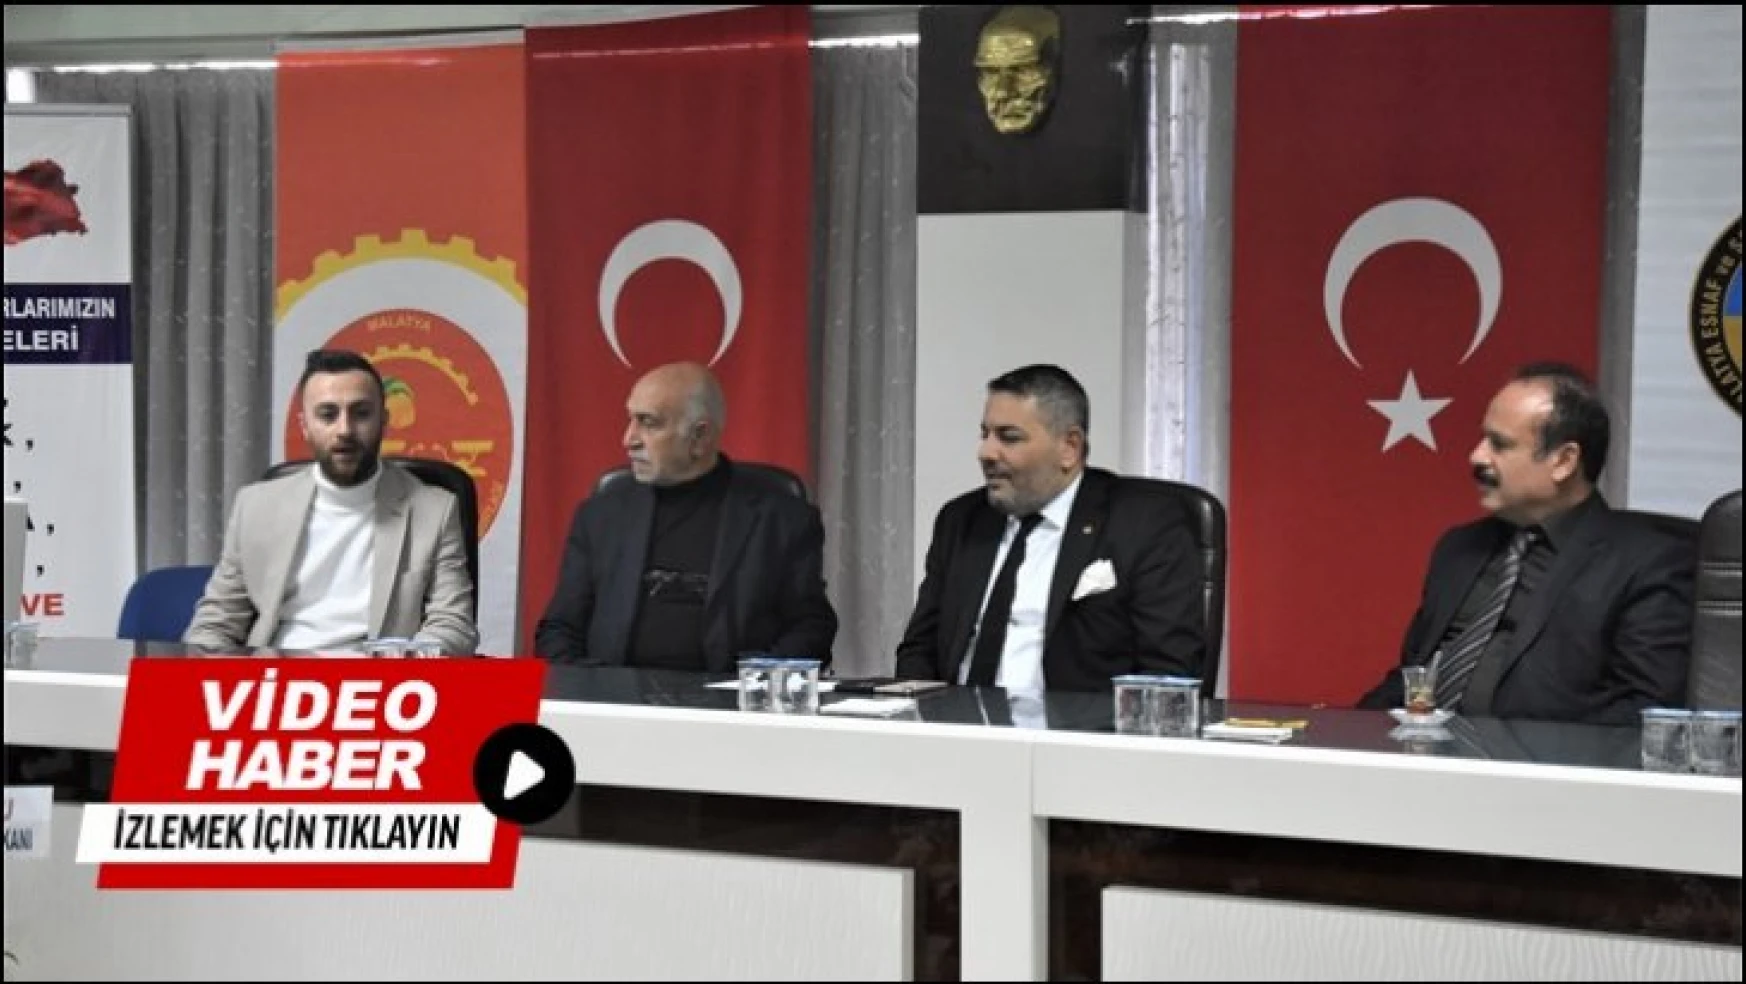 Başkan Sadıkoğlu: 'Esnaf Odası başkanlarımızın gayretine şahidiz'